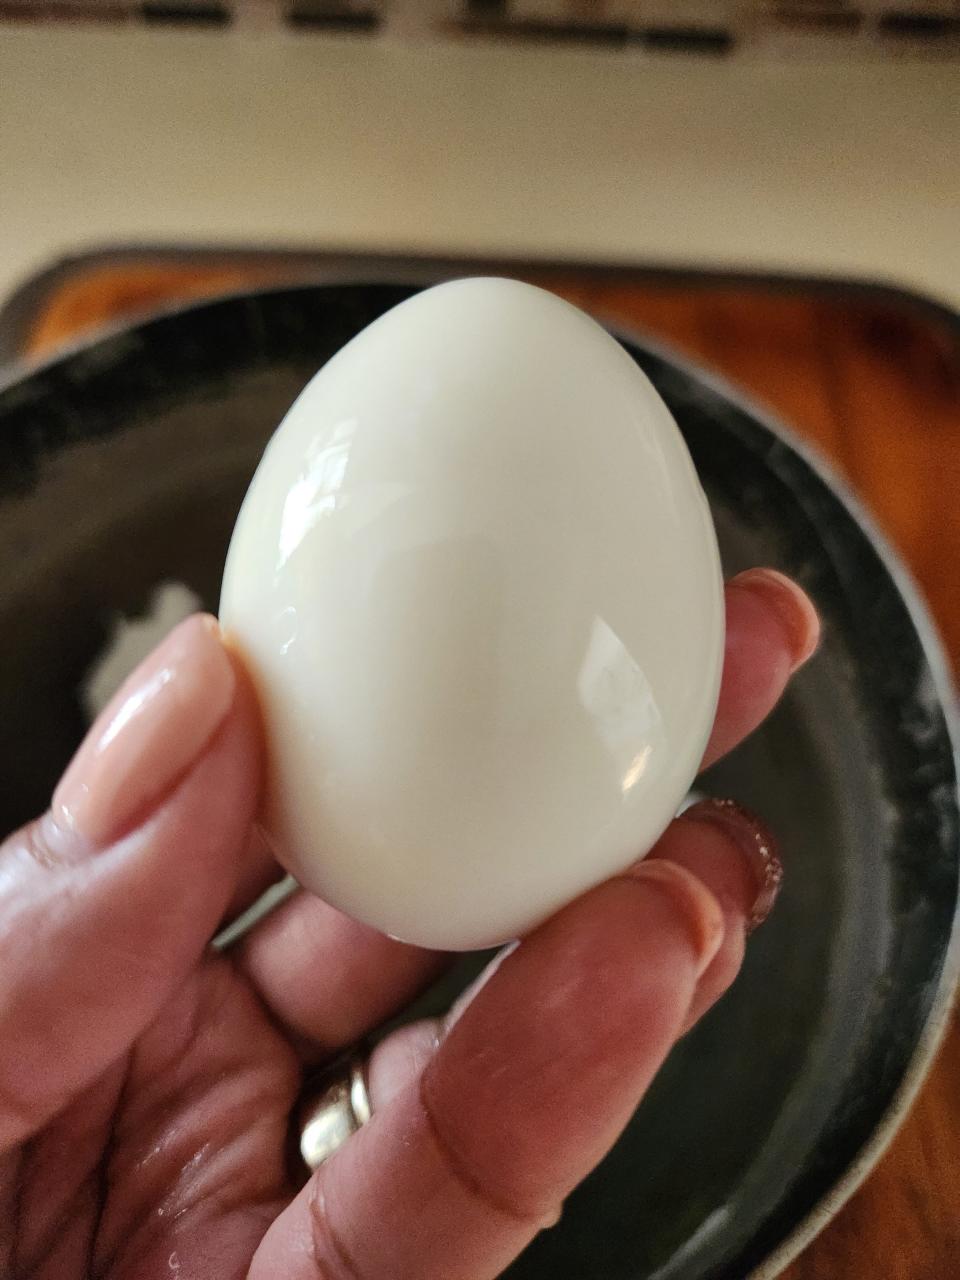 Easy peel hard boiled egg.